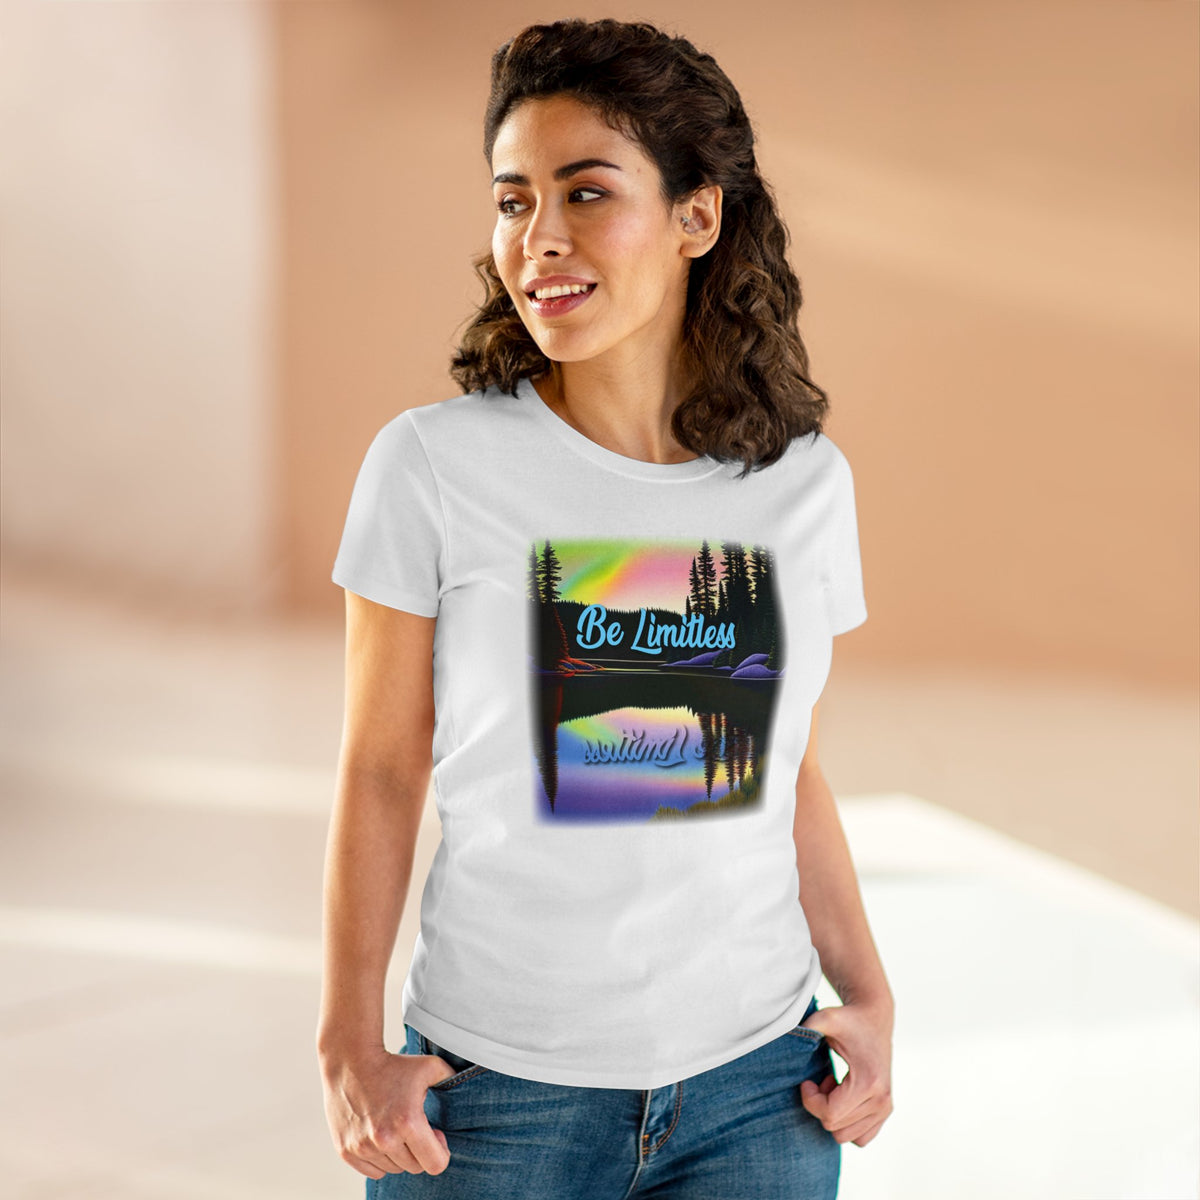 Women's Positive Reflection T-shirt - Inspirational T shirt -  Midweight Cotton Tee - WaterDragon Apparel